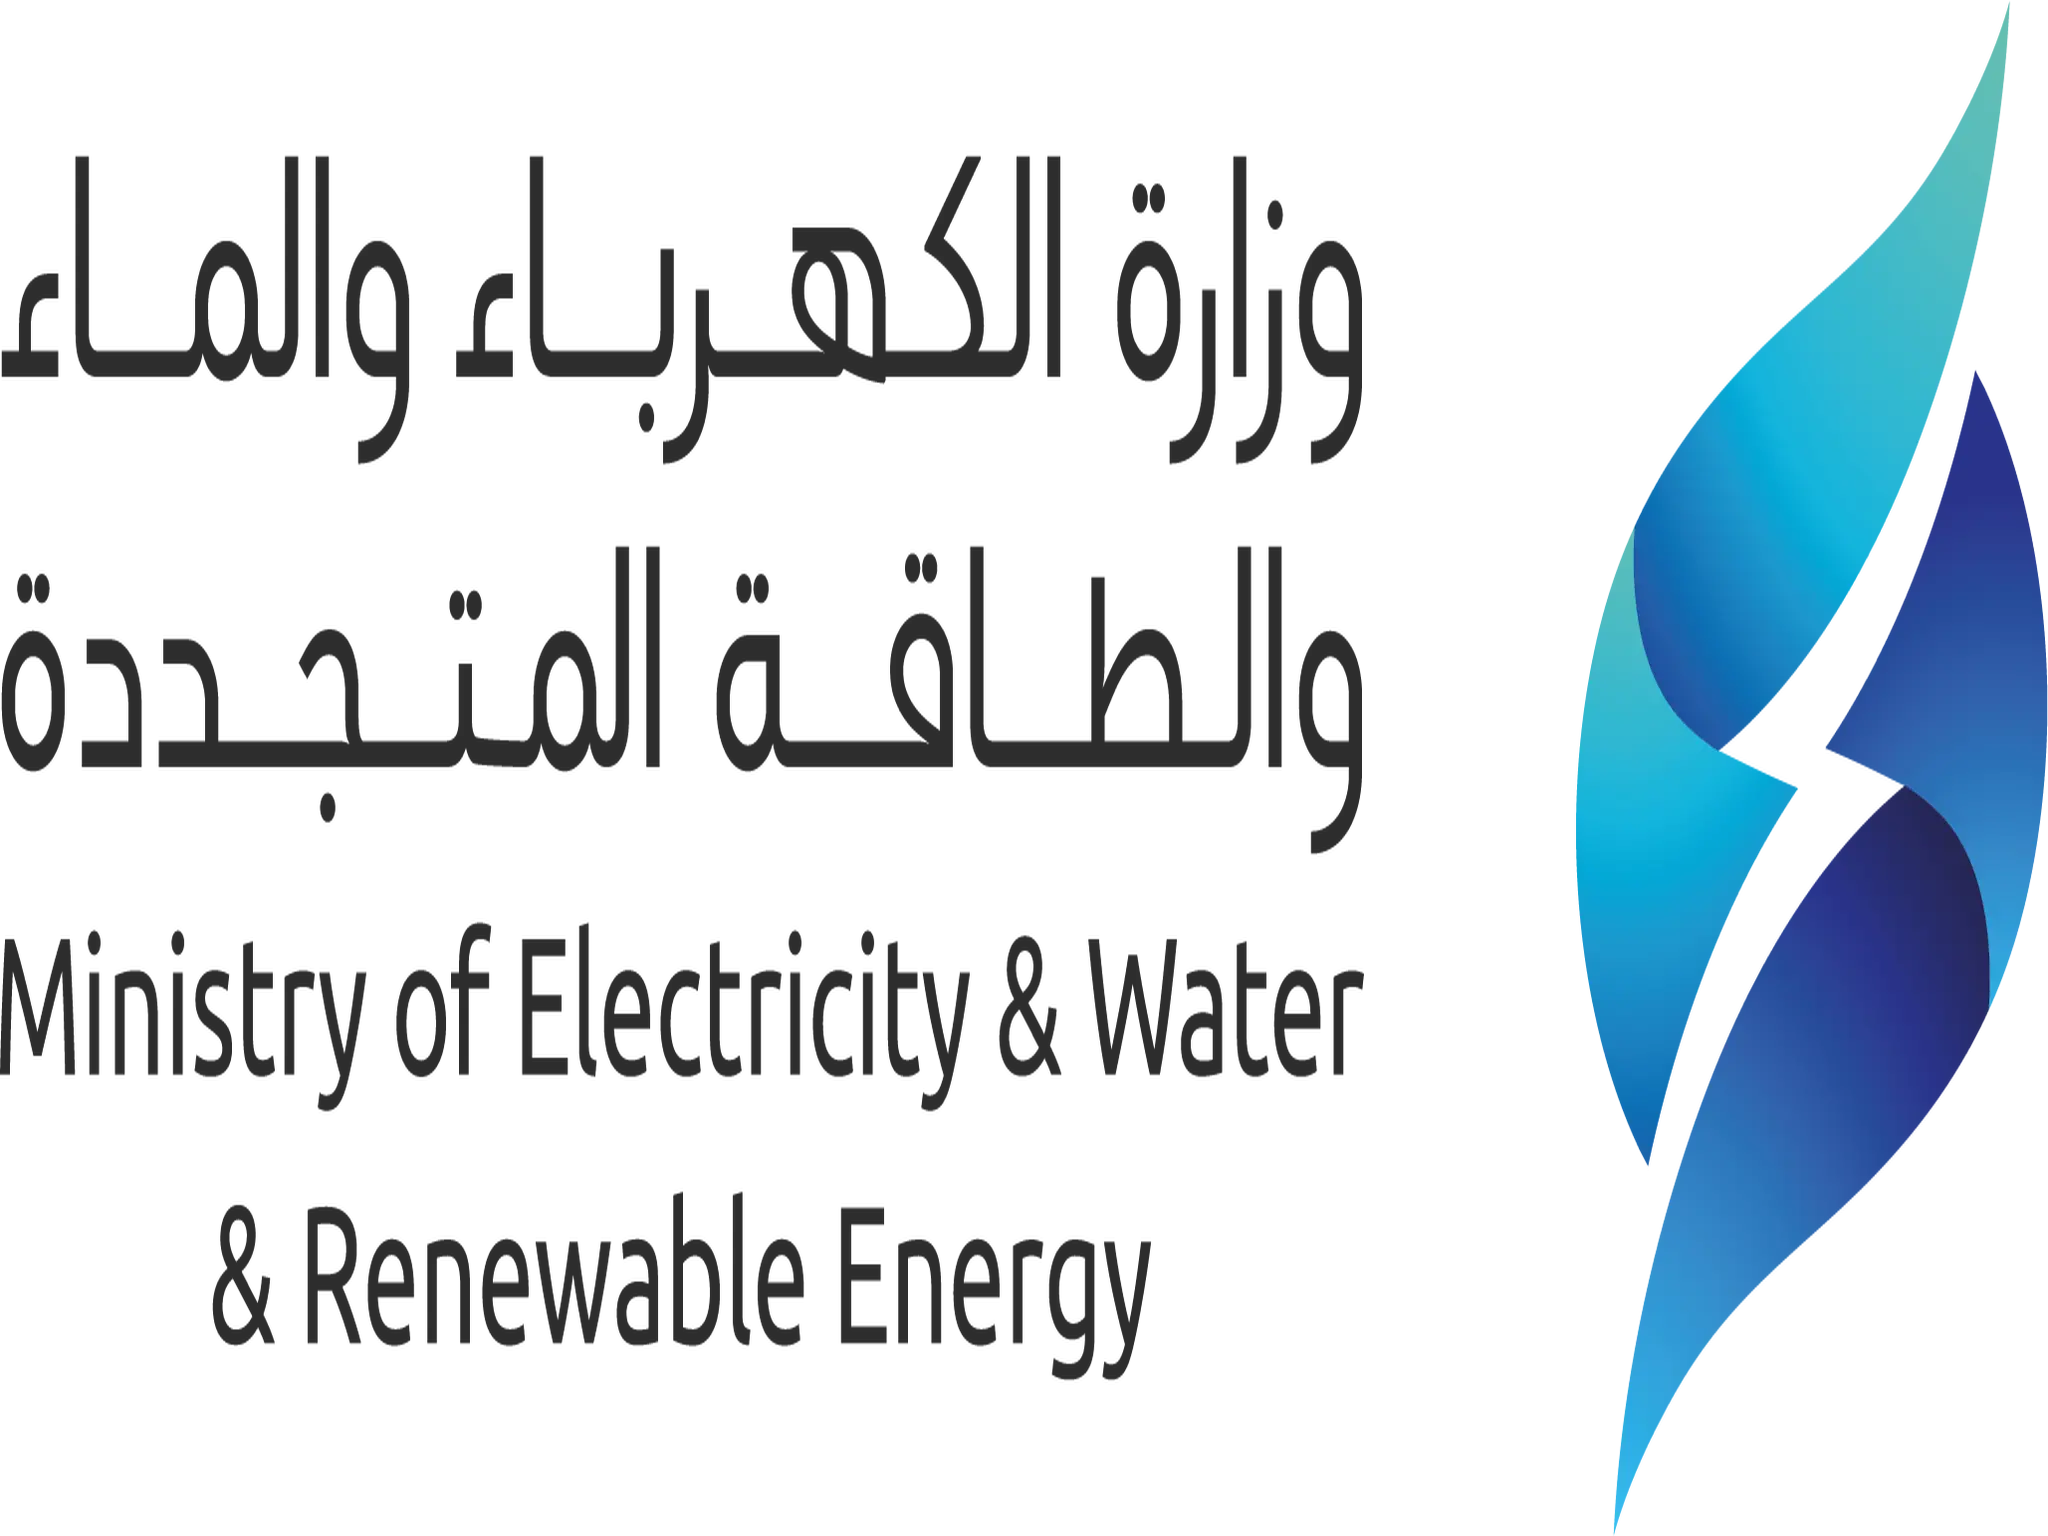  وزارة الكهرباء الكويتة تعاني من صعوبة تعيين 700 مرشح